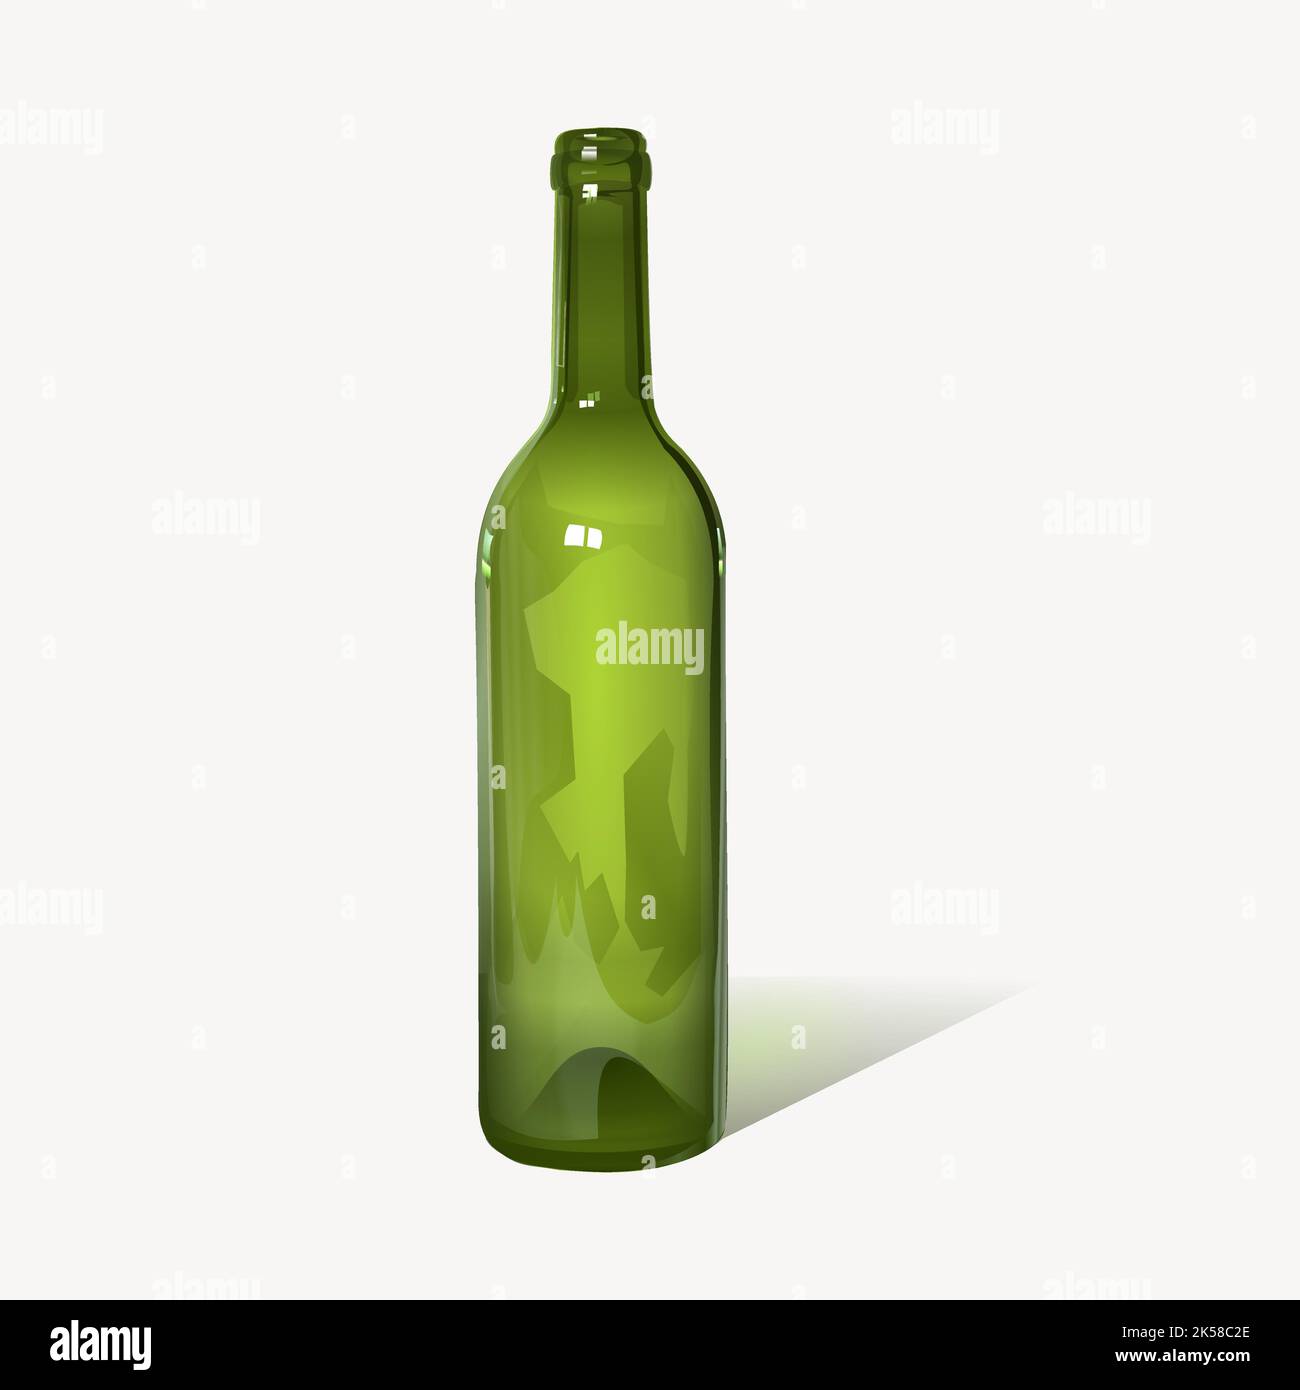 https://c8.alamy.com/comp/2K58C2E/glass-bottle-clipart-green-object-illustration-vector-2K58C2E.jpg